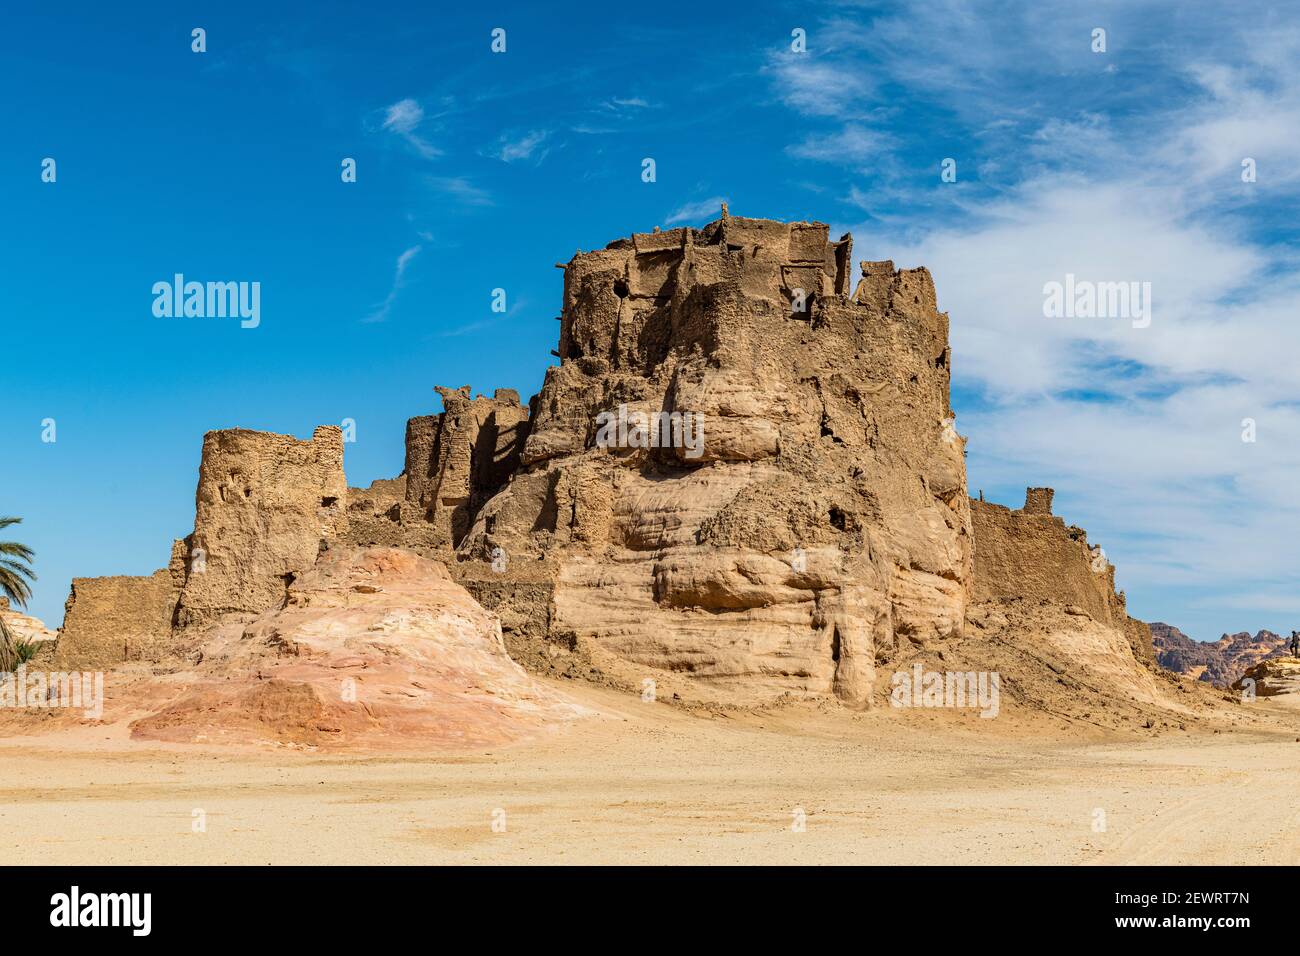 Ancien fort abandonné à Djado, désert de Tenere, Sahara, Niger, Afrique Banque D'Images